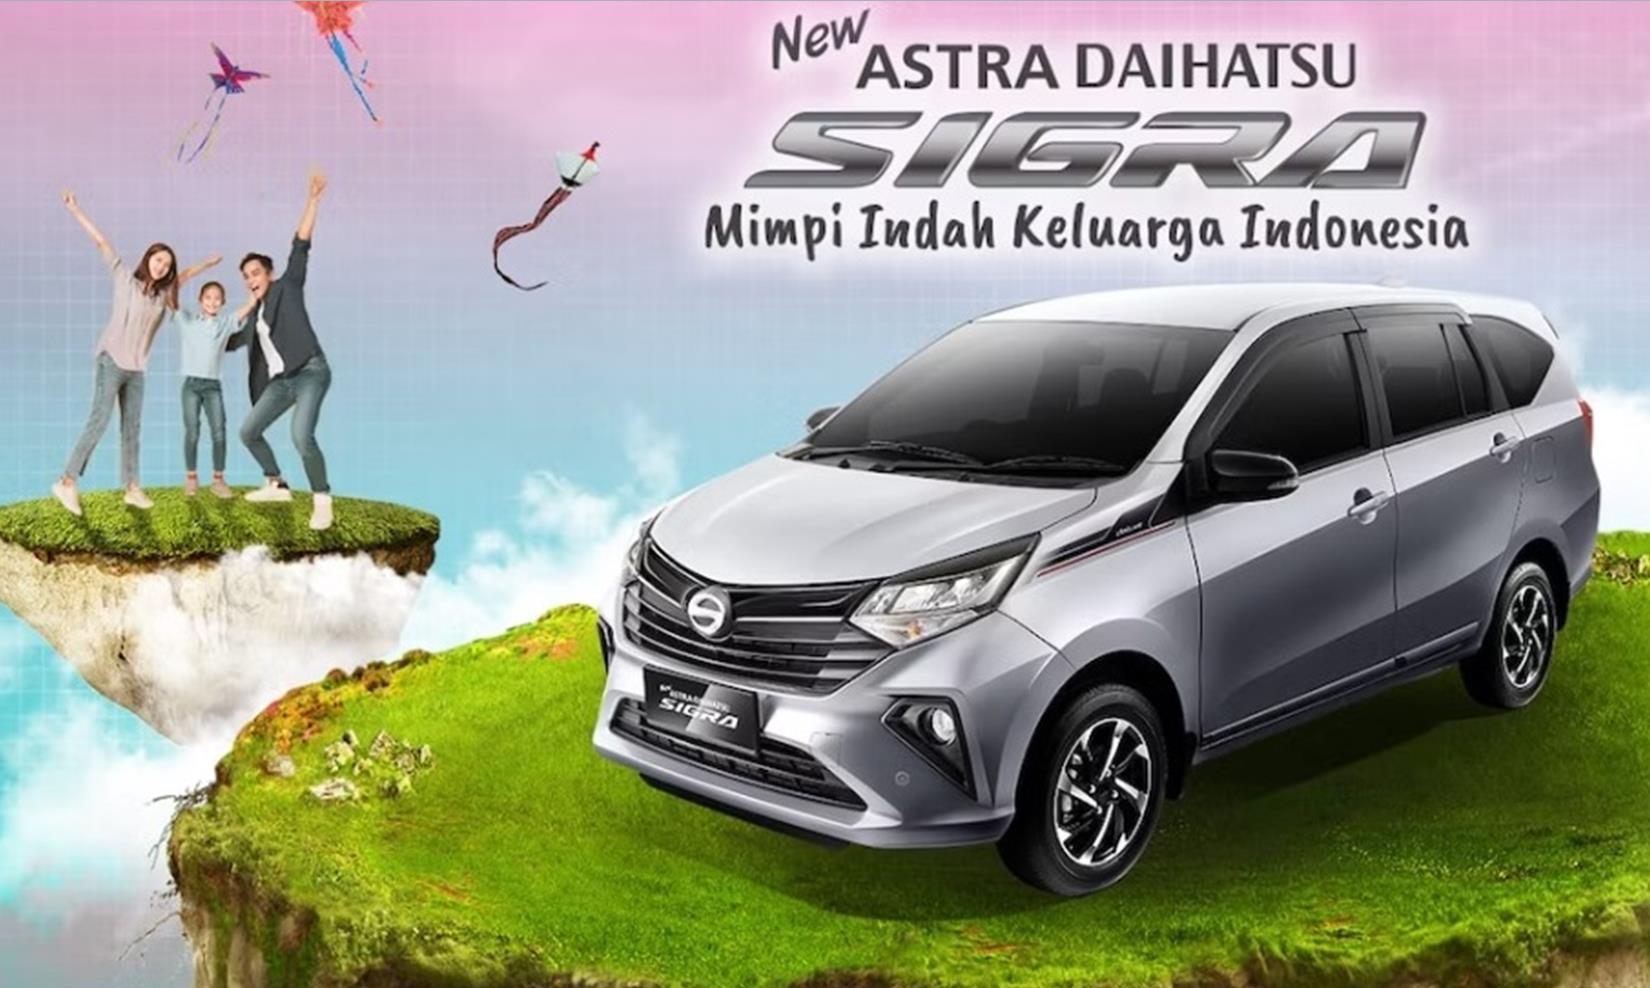 5 Alasan Ini Membuat Daihatsu Sigra Jadi Mobil Pilihan Para Keluarga Muda di Indonesia, Apa Saja Tuh?